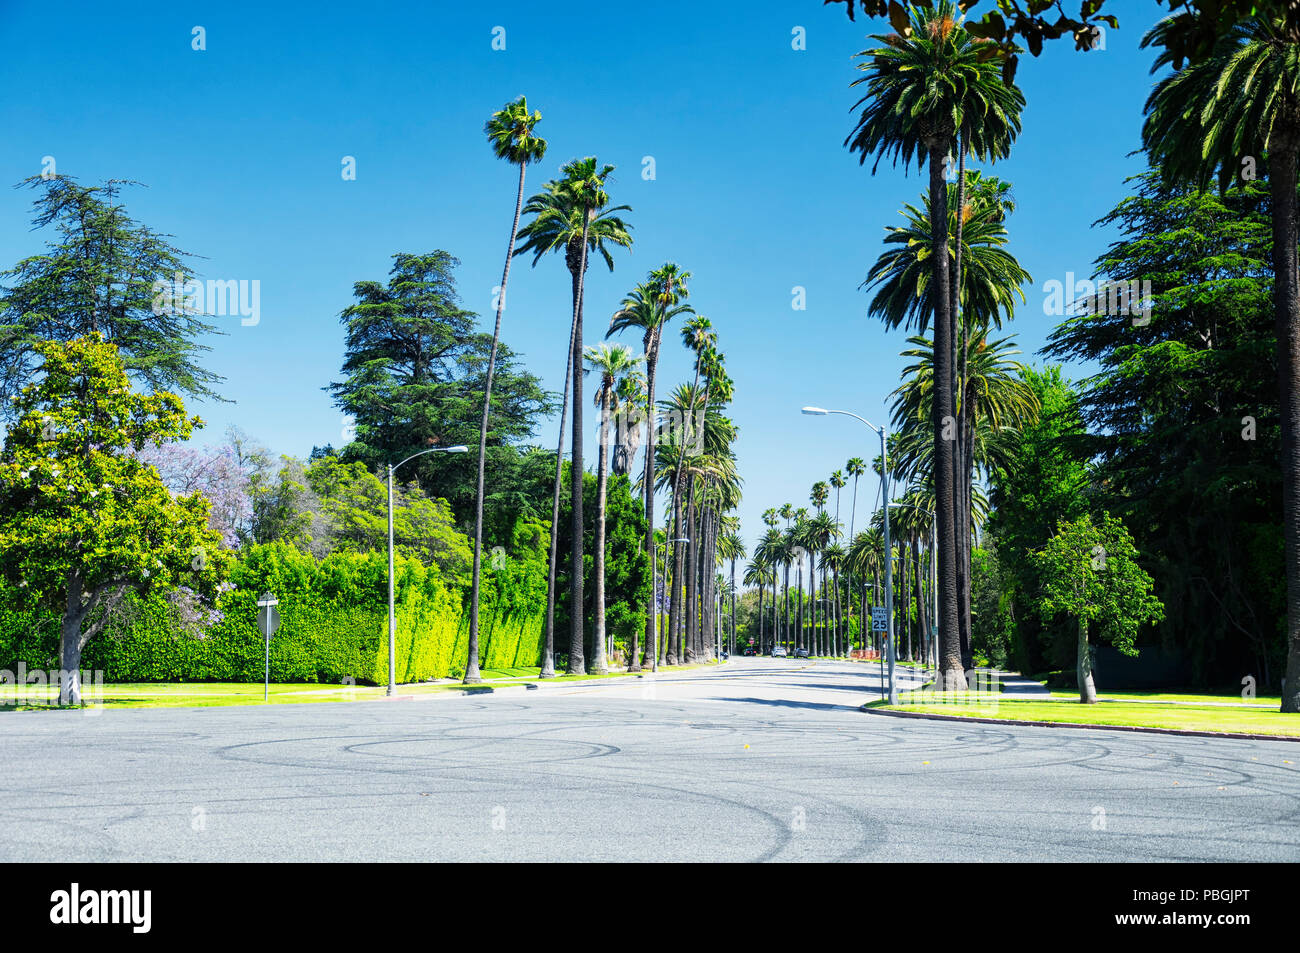 La rue bordée de palmiers de beverly hills, en Californie, lors d'une journée ensoleillée. Banque D'Images